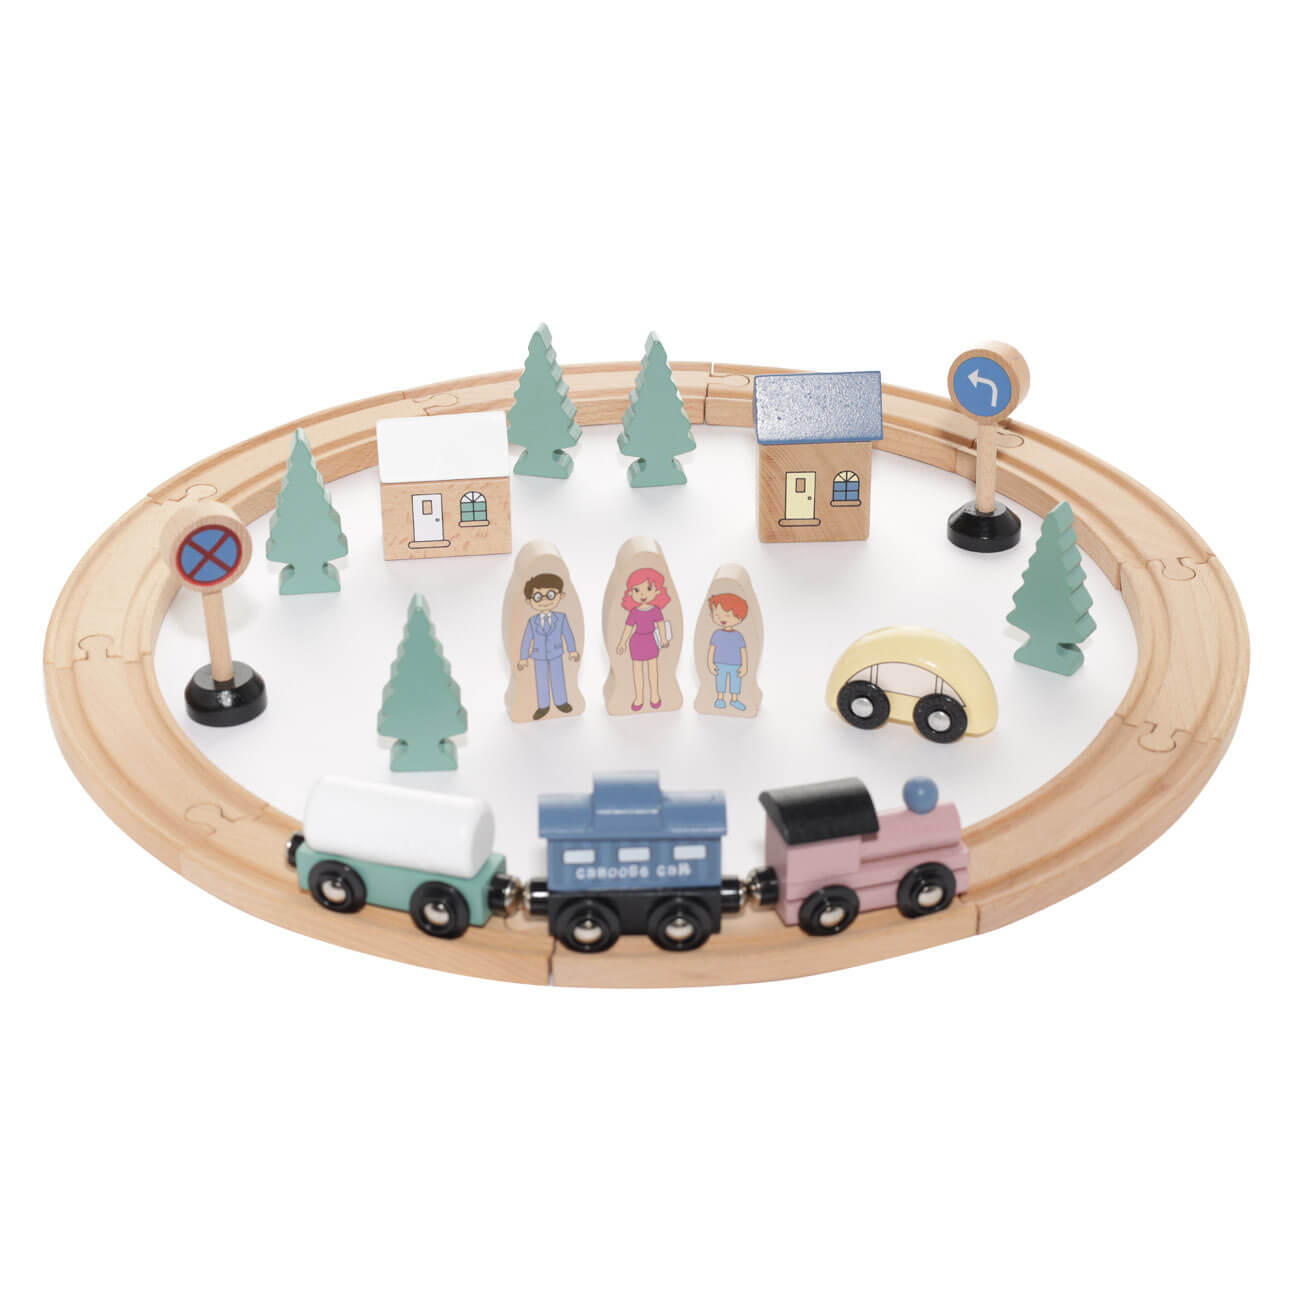 Железная дорога игрушечная, 28 см, дерево, Город, Game железная дорога storage train с парковкой